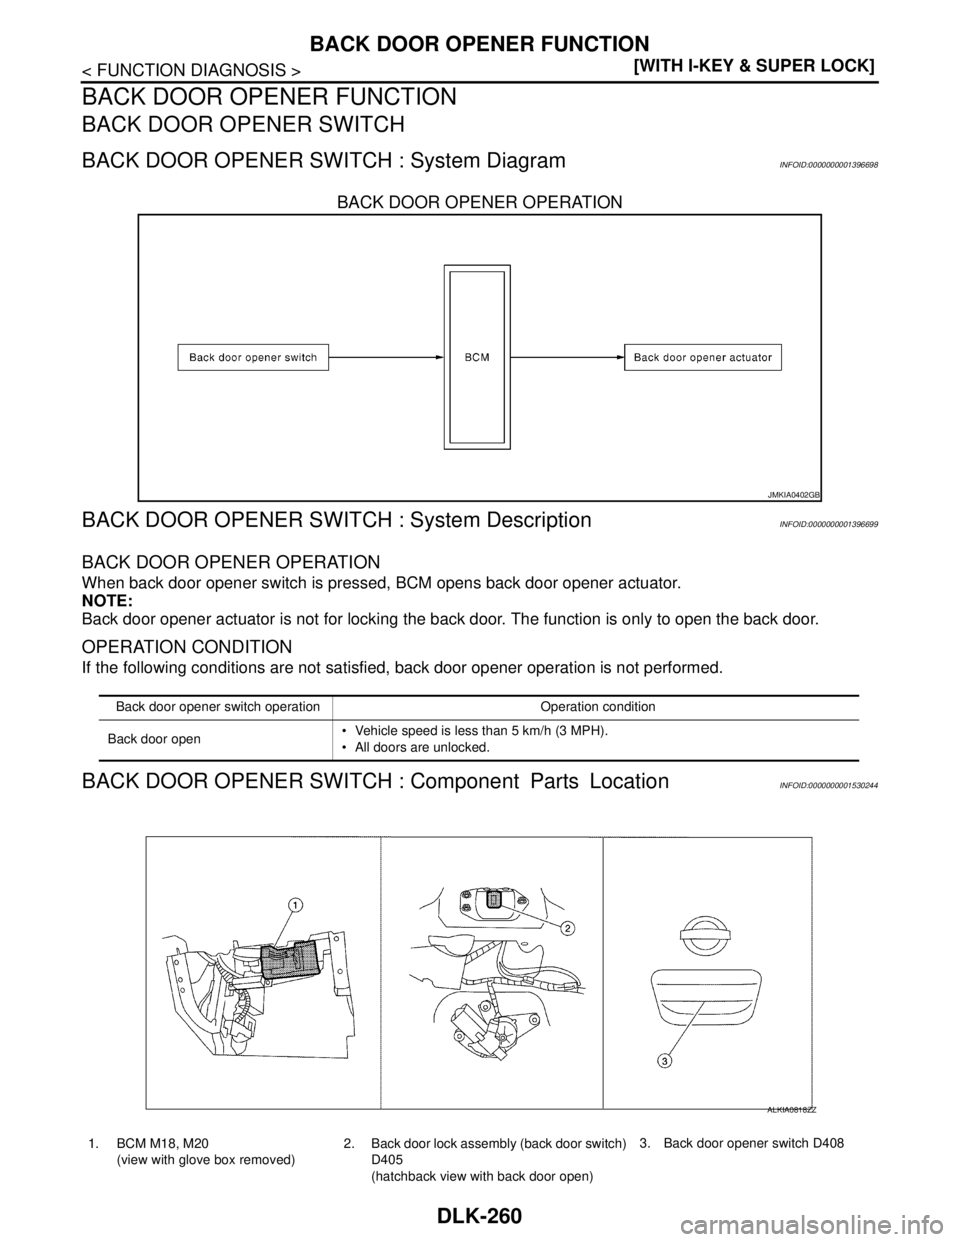 NISSAN TIIDA 2007  Service User Guide DLK-260
< FUNCTION DIAGNOSIS >[WITH I-KEY & SUPER LOCK]
BACK DOOR OPENER FUNCTION
BACK DOOR OPENER FUNCTION
BACK DOOR OPENER SWITCH
BACK DOOR OPENER SWITCH : System DiagramINFOID:0000000001396698
BACK